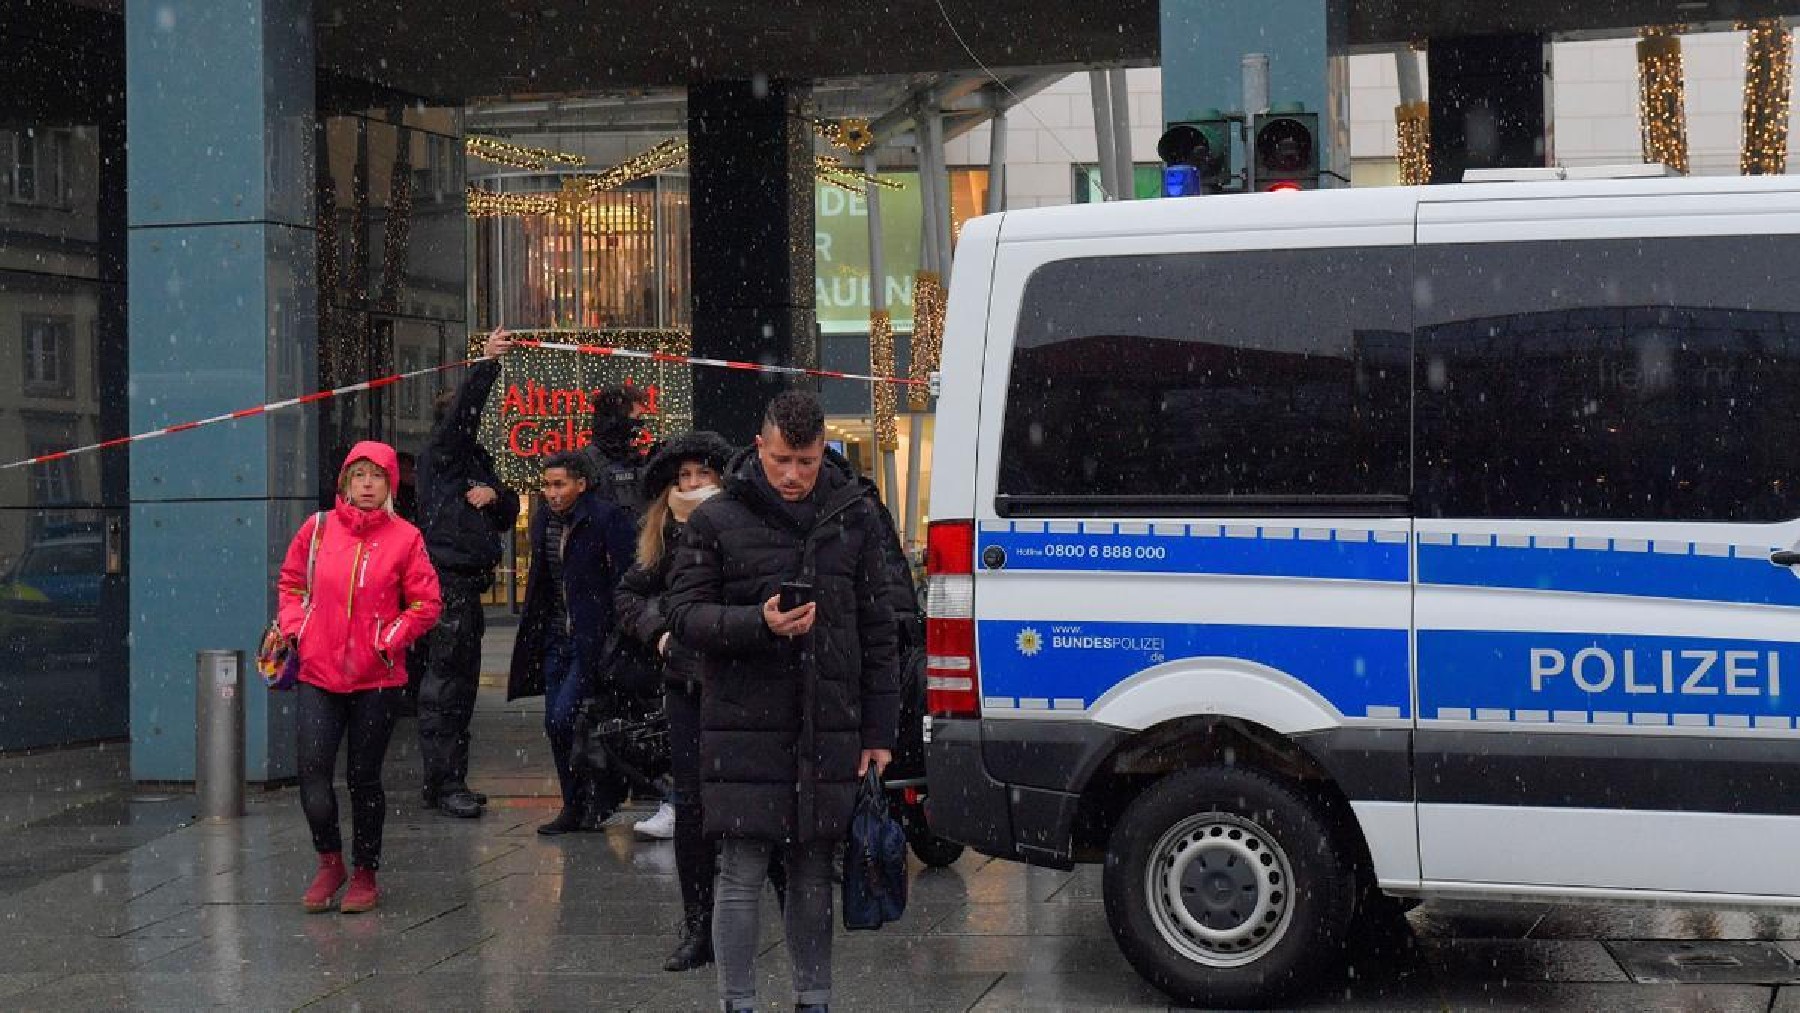 Público evacuado por la policía en un mercado navideño en Dresden, Alemania (Reuters)